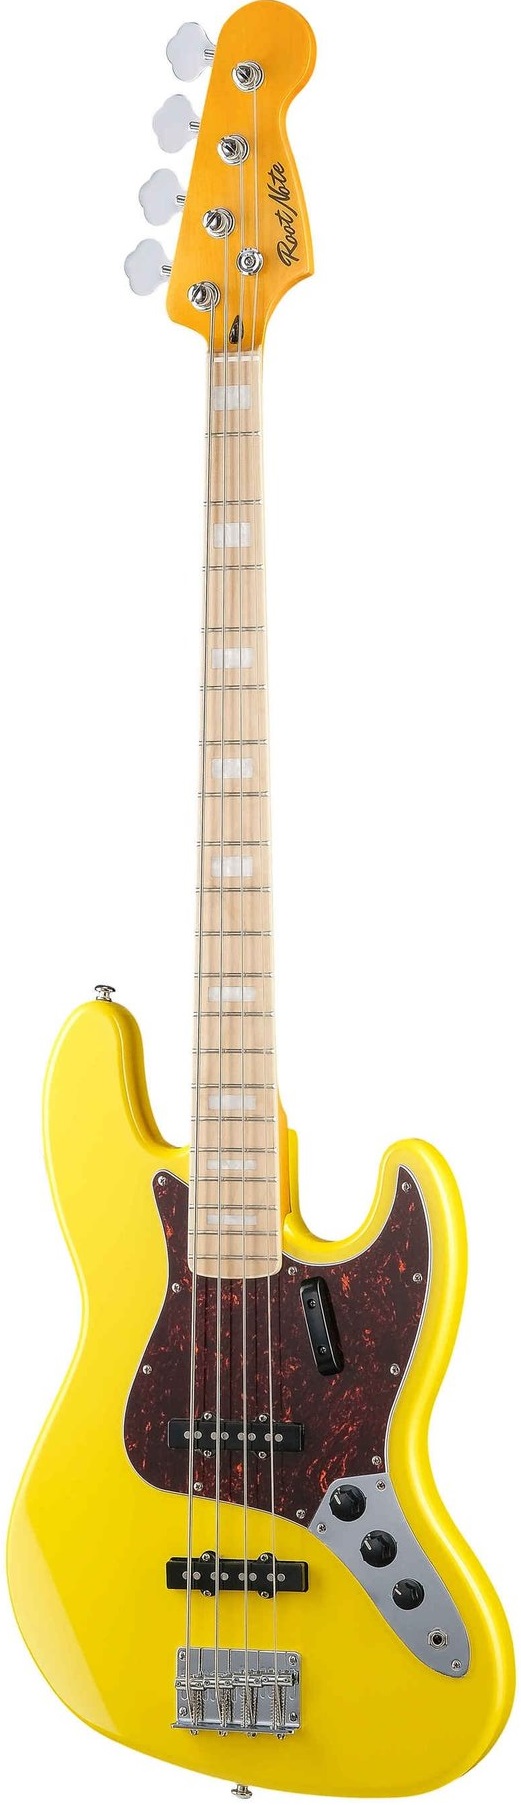 Бас-гитары Root Note JB001-VWH 4 шт вешалки для гитары настенное крепление держатель для гитары гитара укулеле бас поддержка дисплей